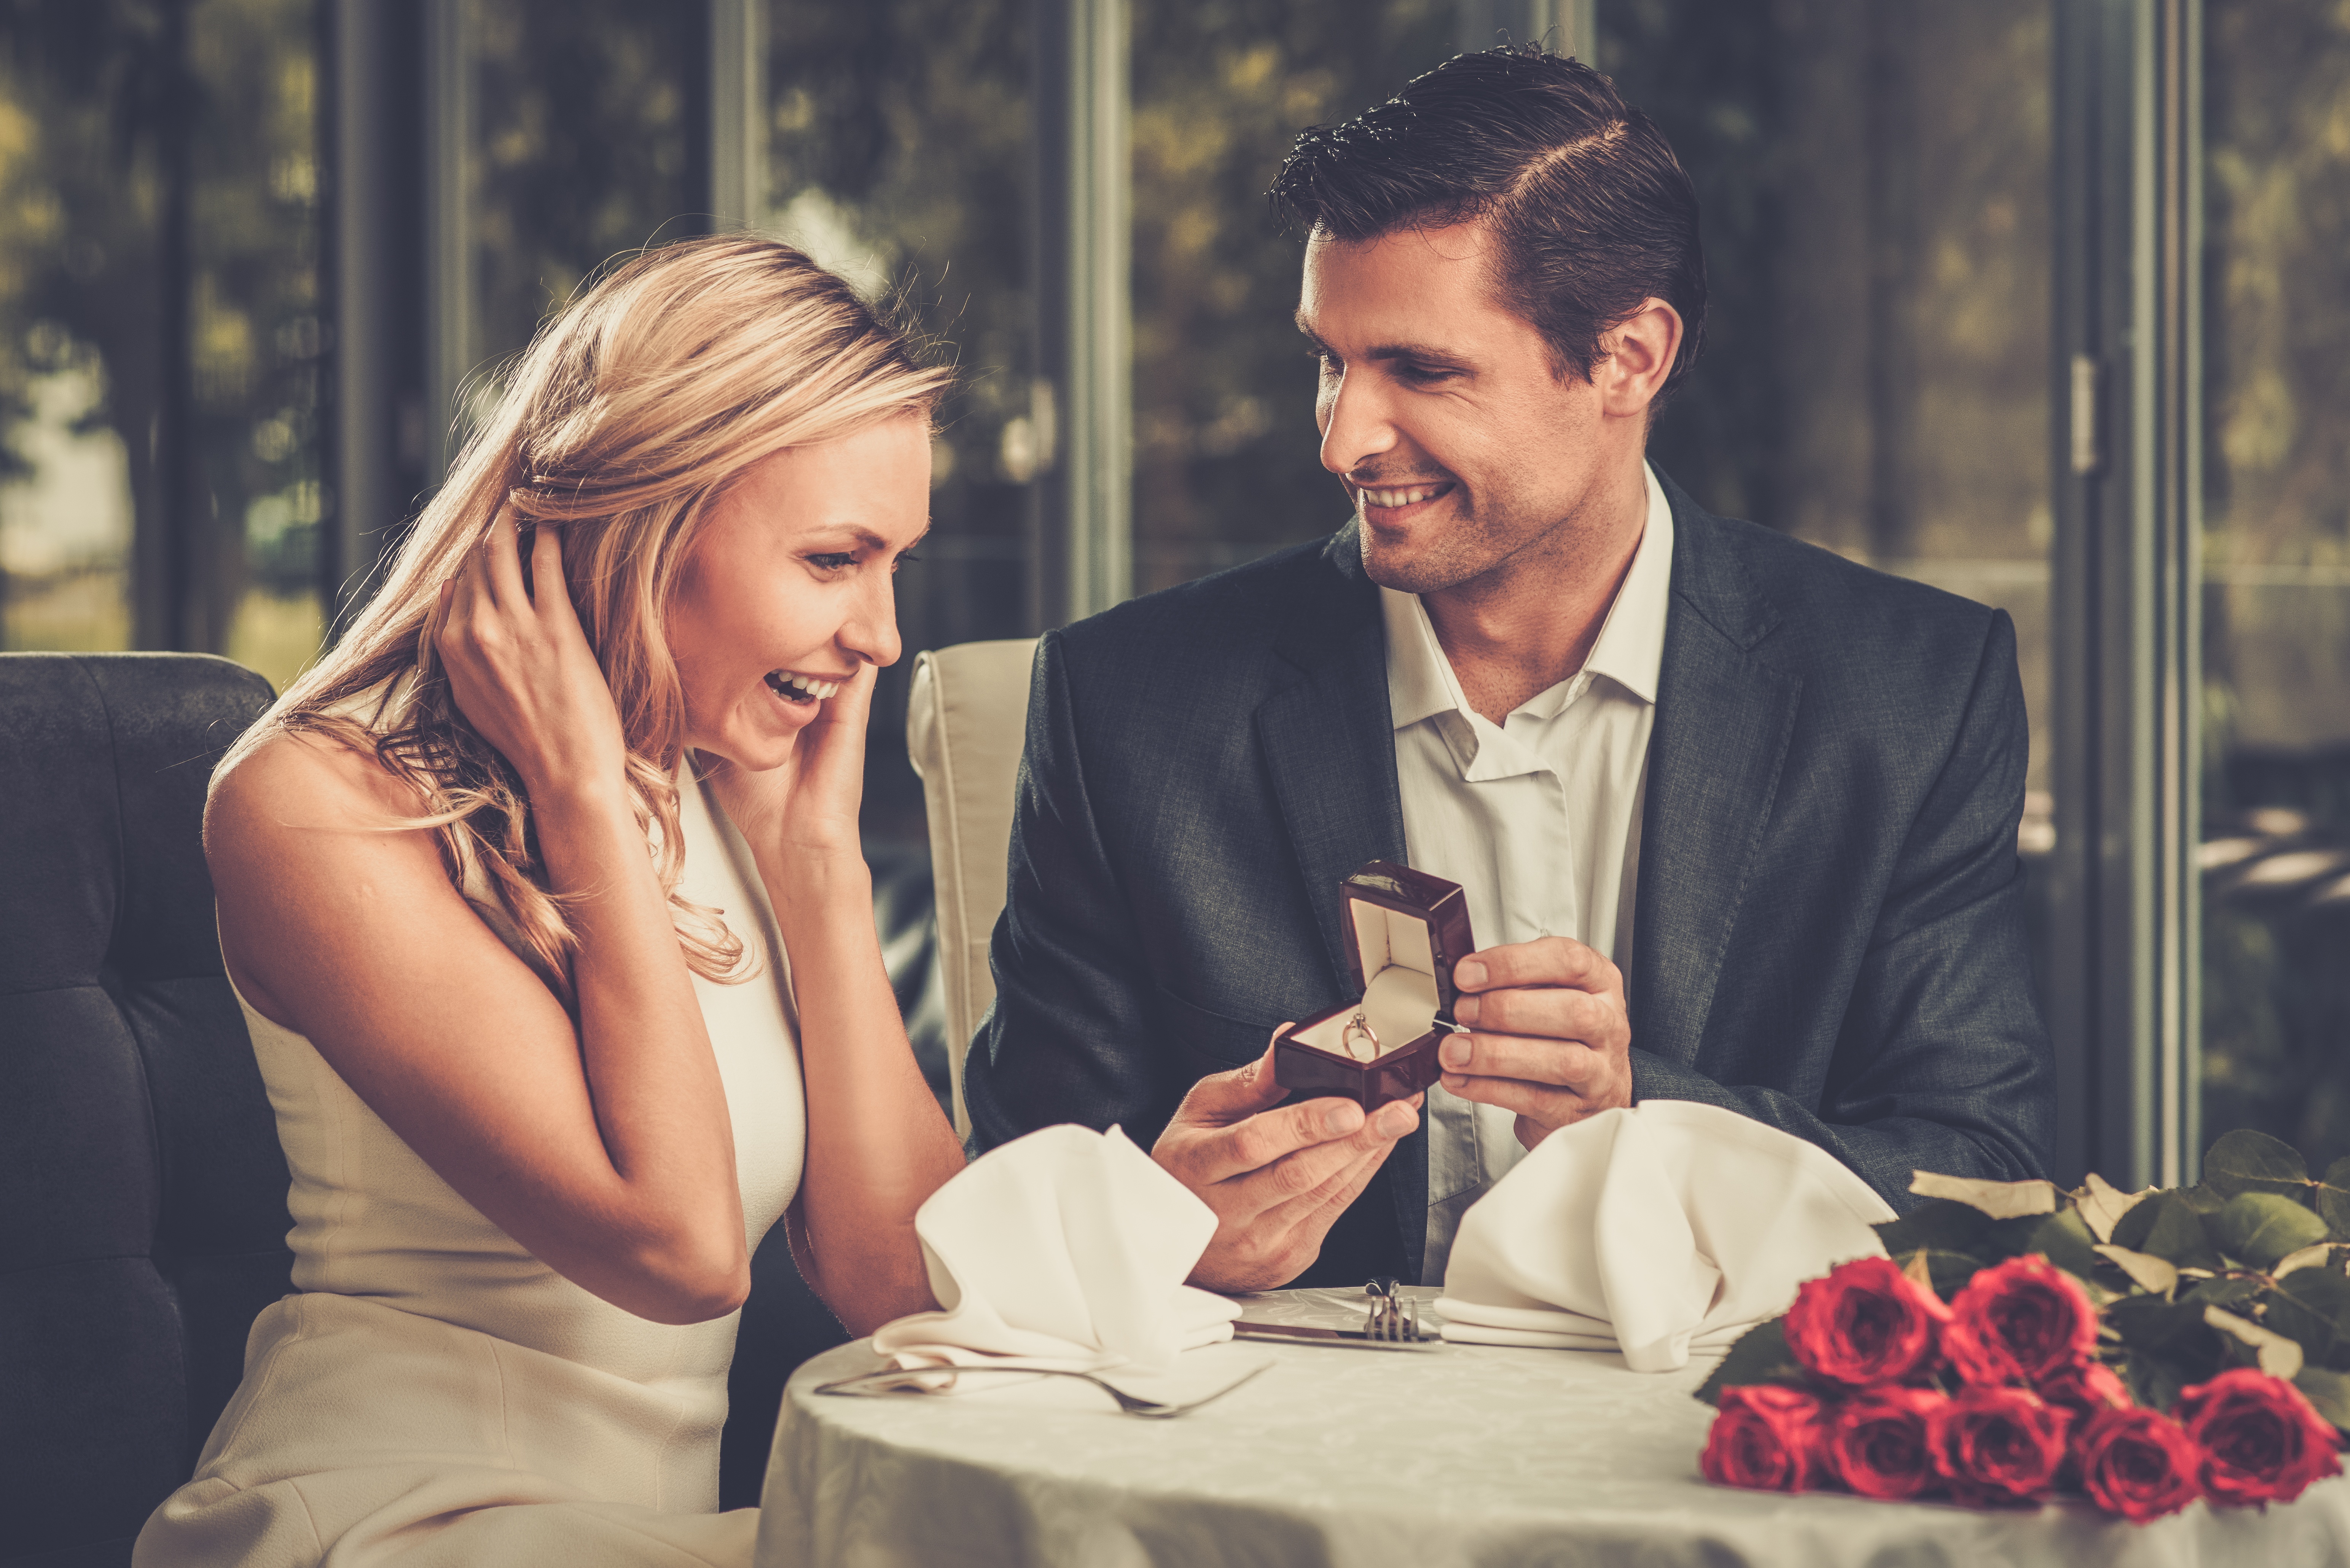 Un homme offrant une bague à une femme | Source : Shutterstock